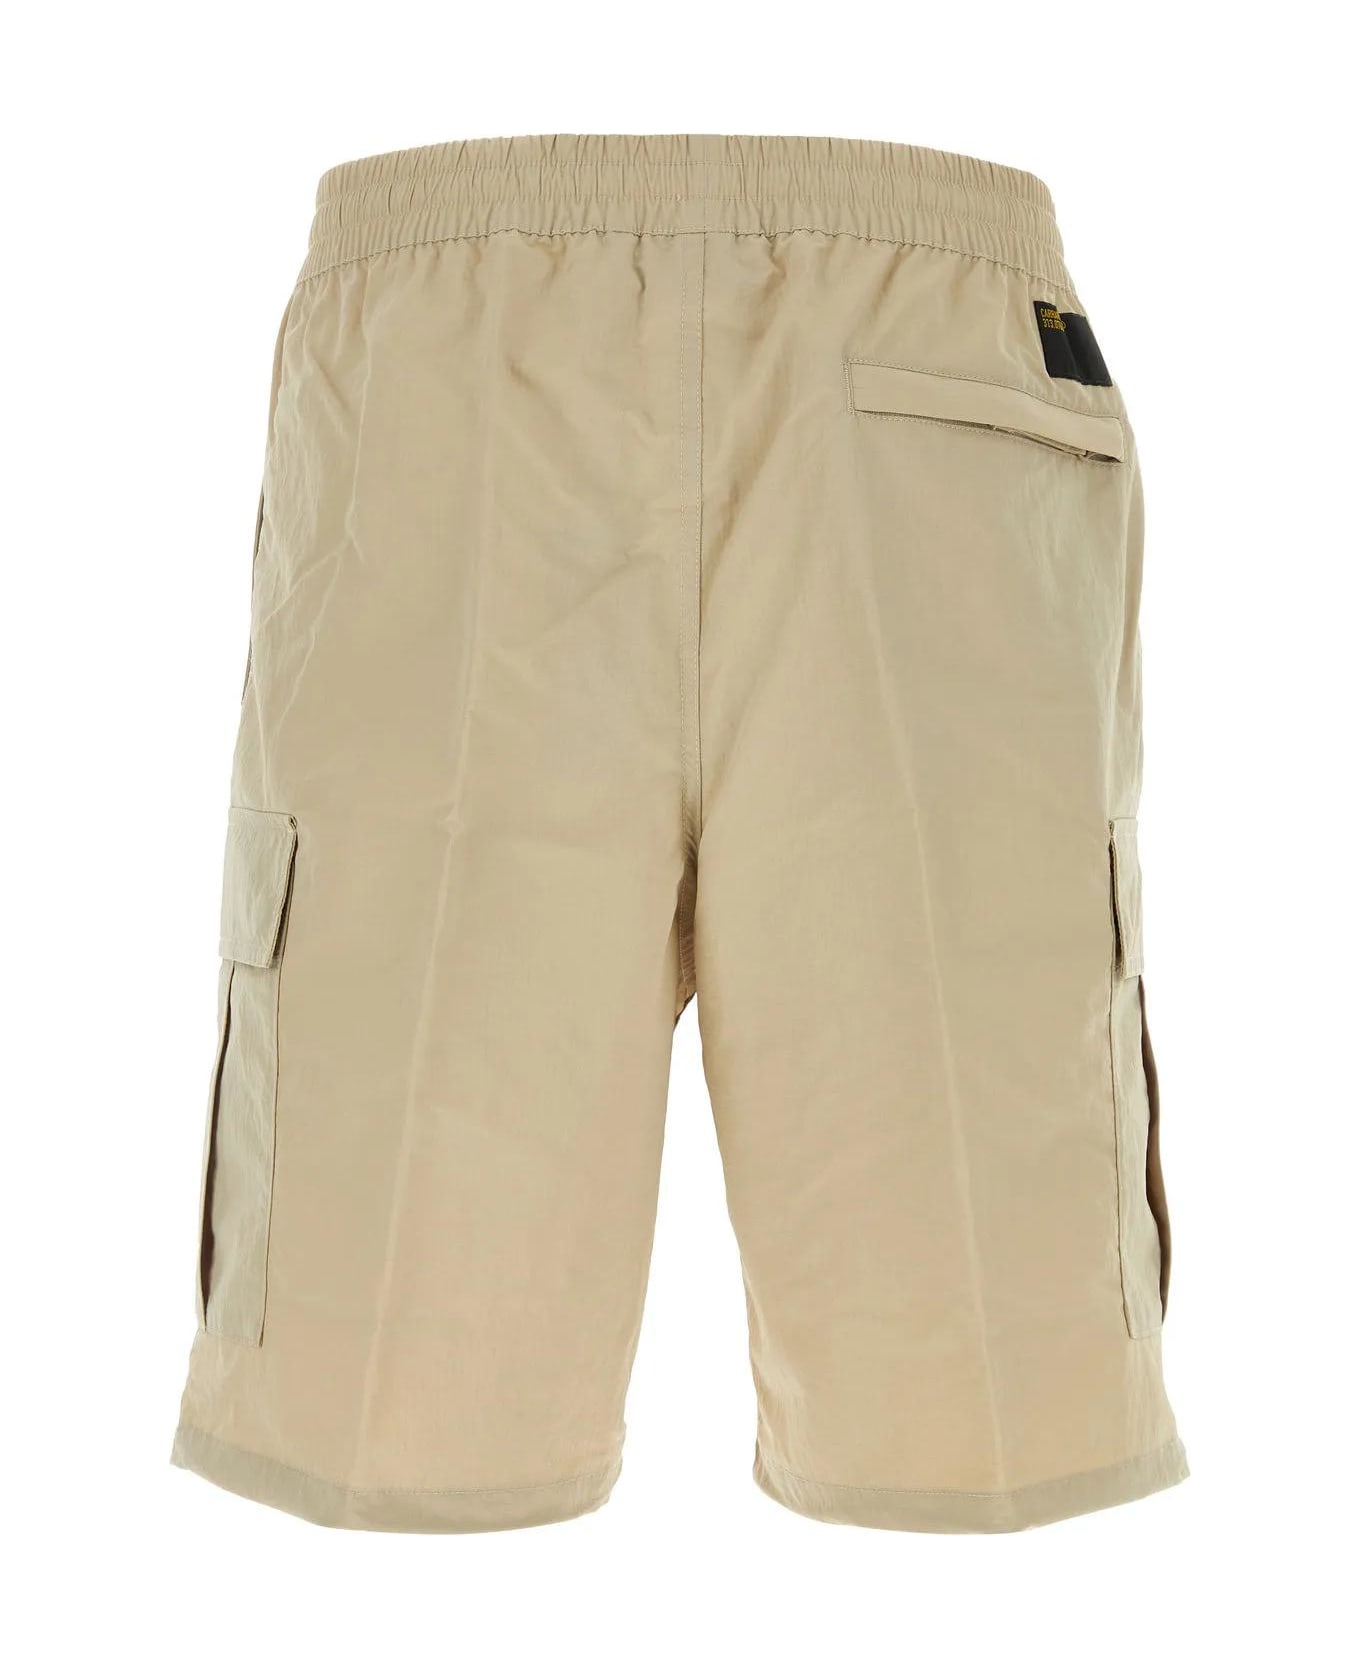 Carhartt Sand Nylon Evers Cargo Shorts - Wall